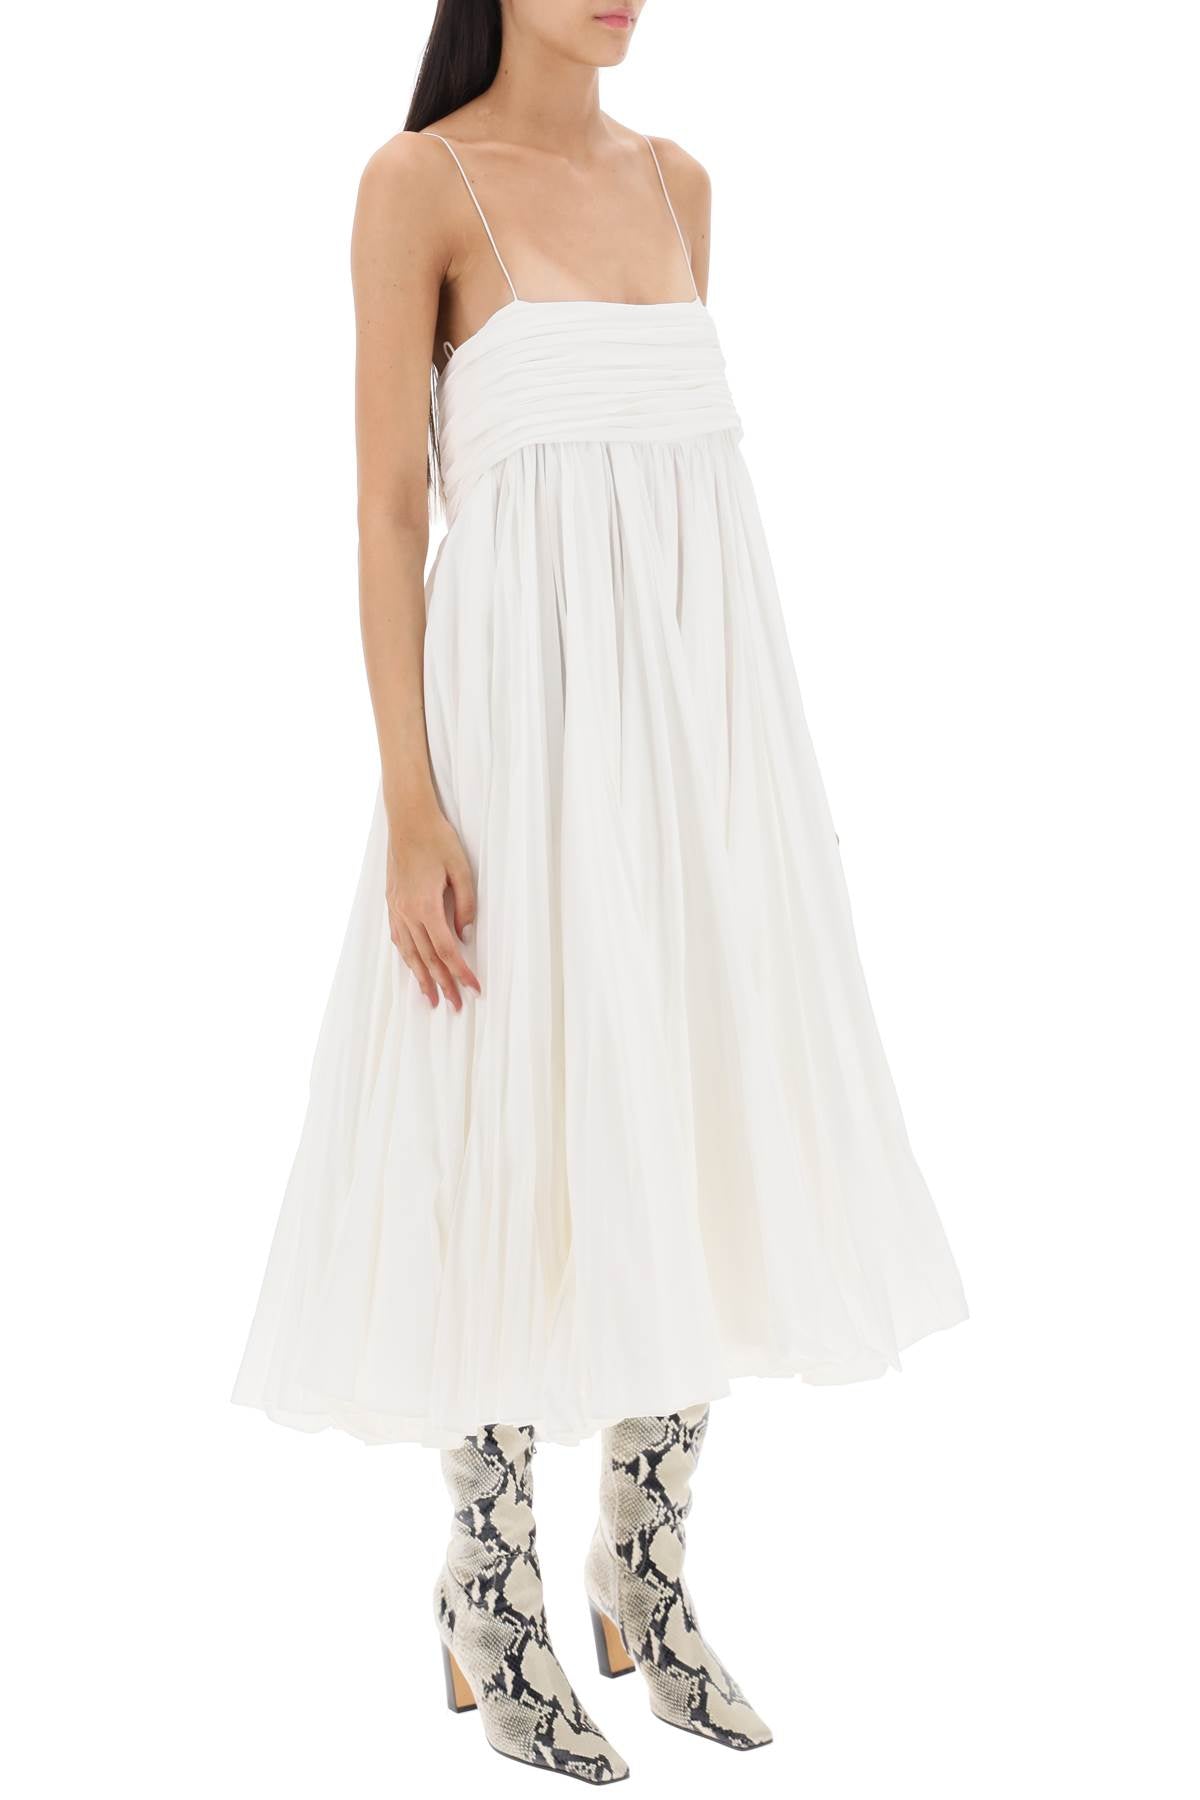 棉質白色女性迷綺Midi裙 - 帝國腰帶圓形半身裙、雪紡束胸設計、輕薄肩帶